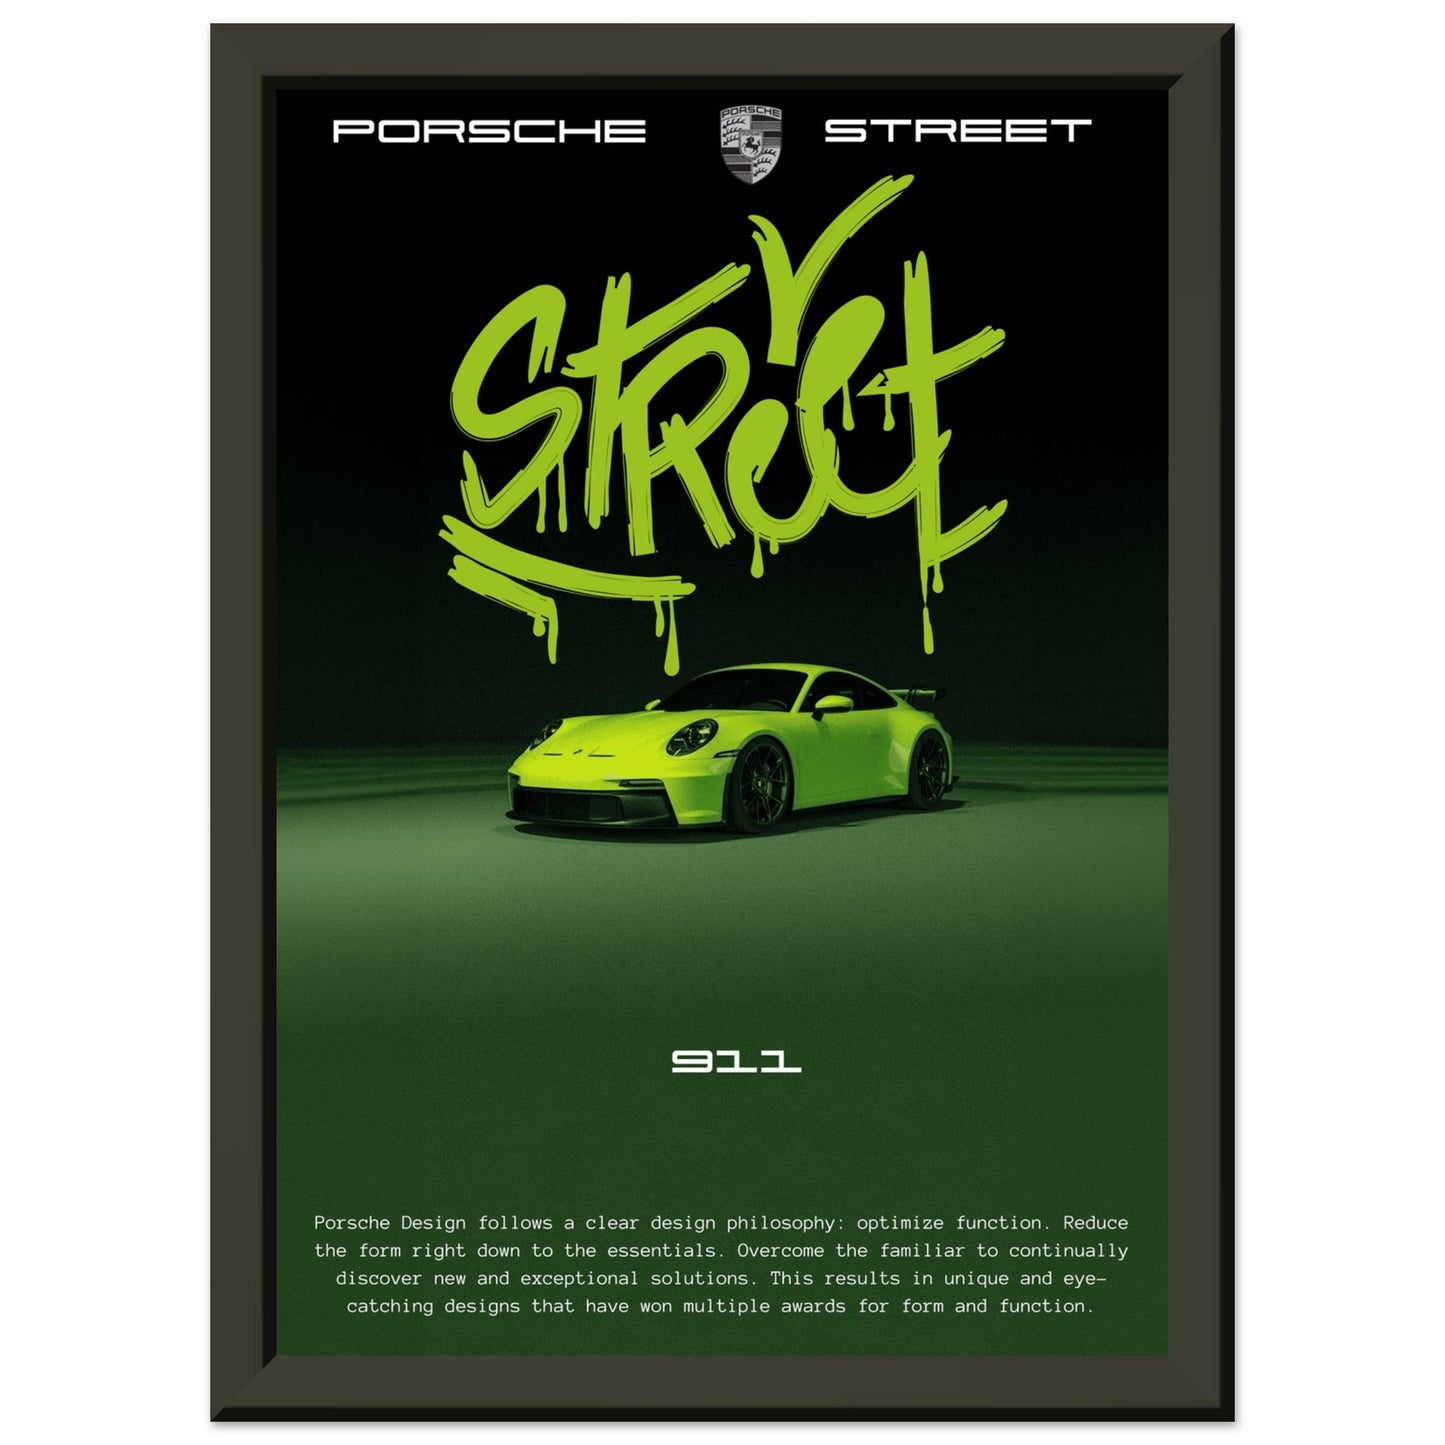 Porsche 911 "Street"